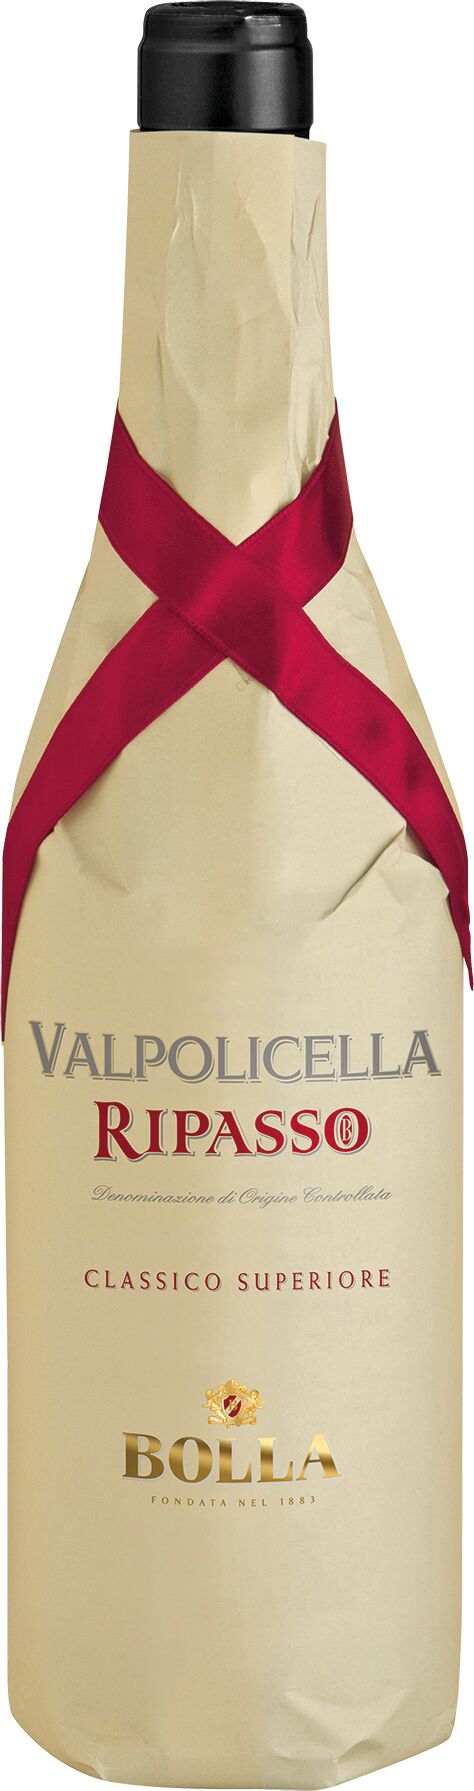 Bolla Valpolicella Ripasso Superiore - 0.75 DOC Classico 2021 l